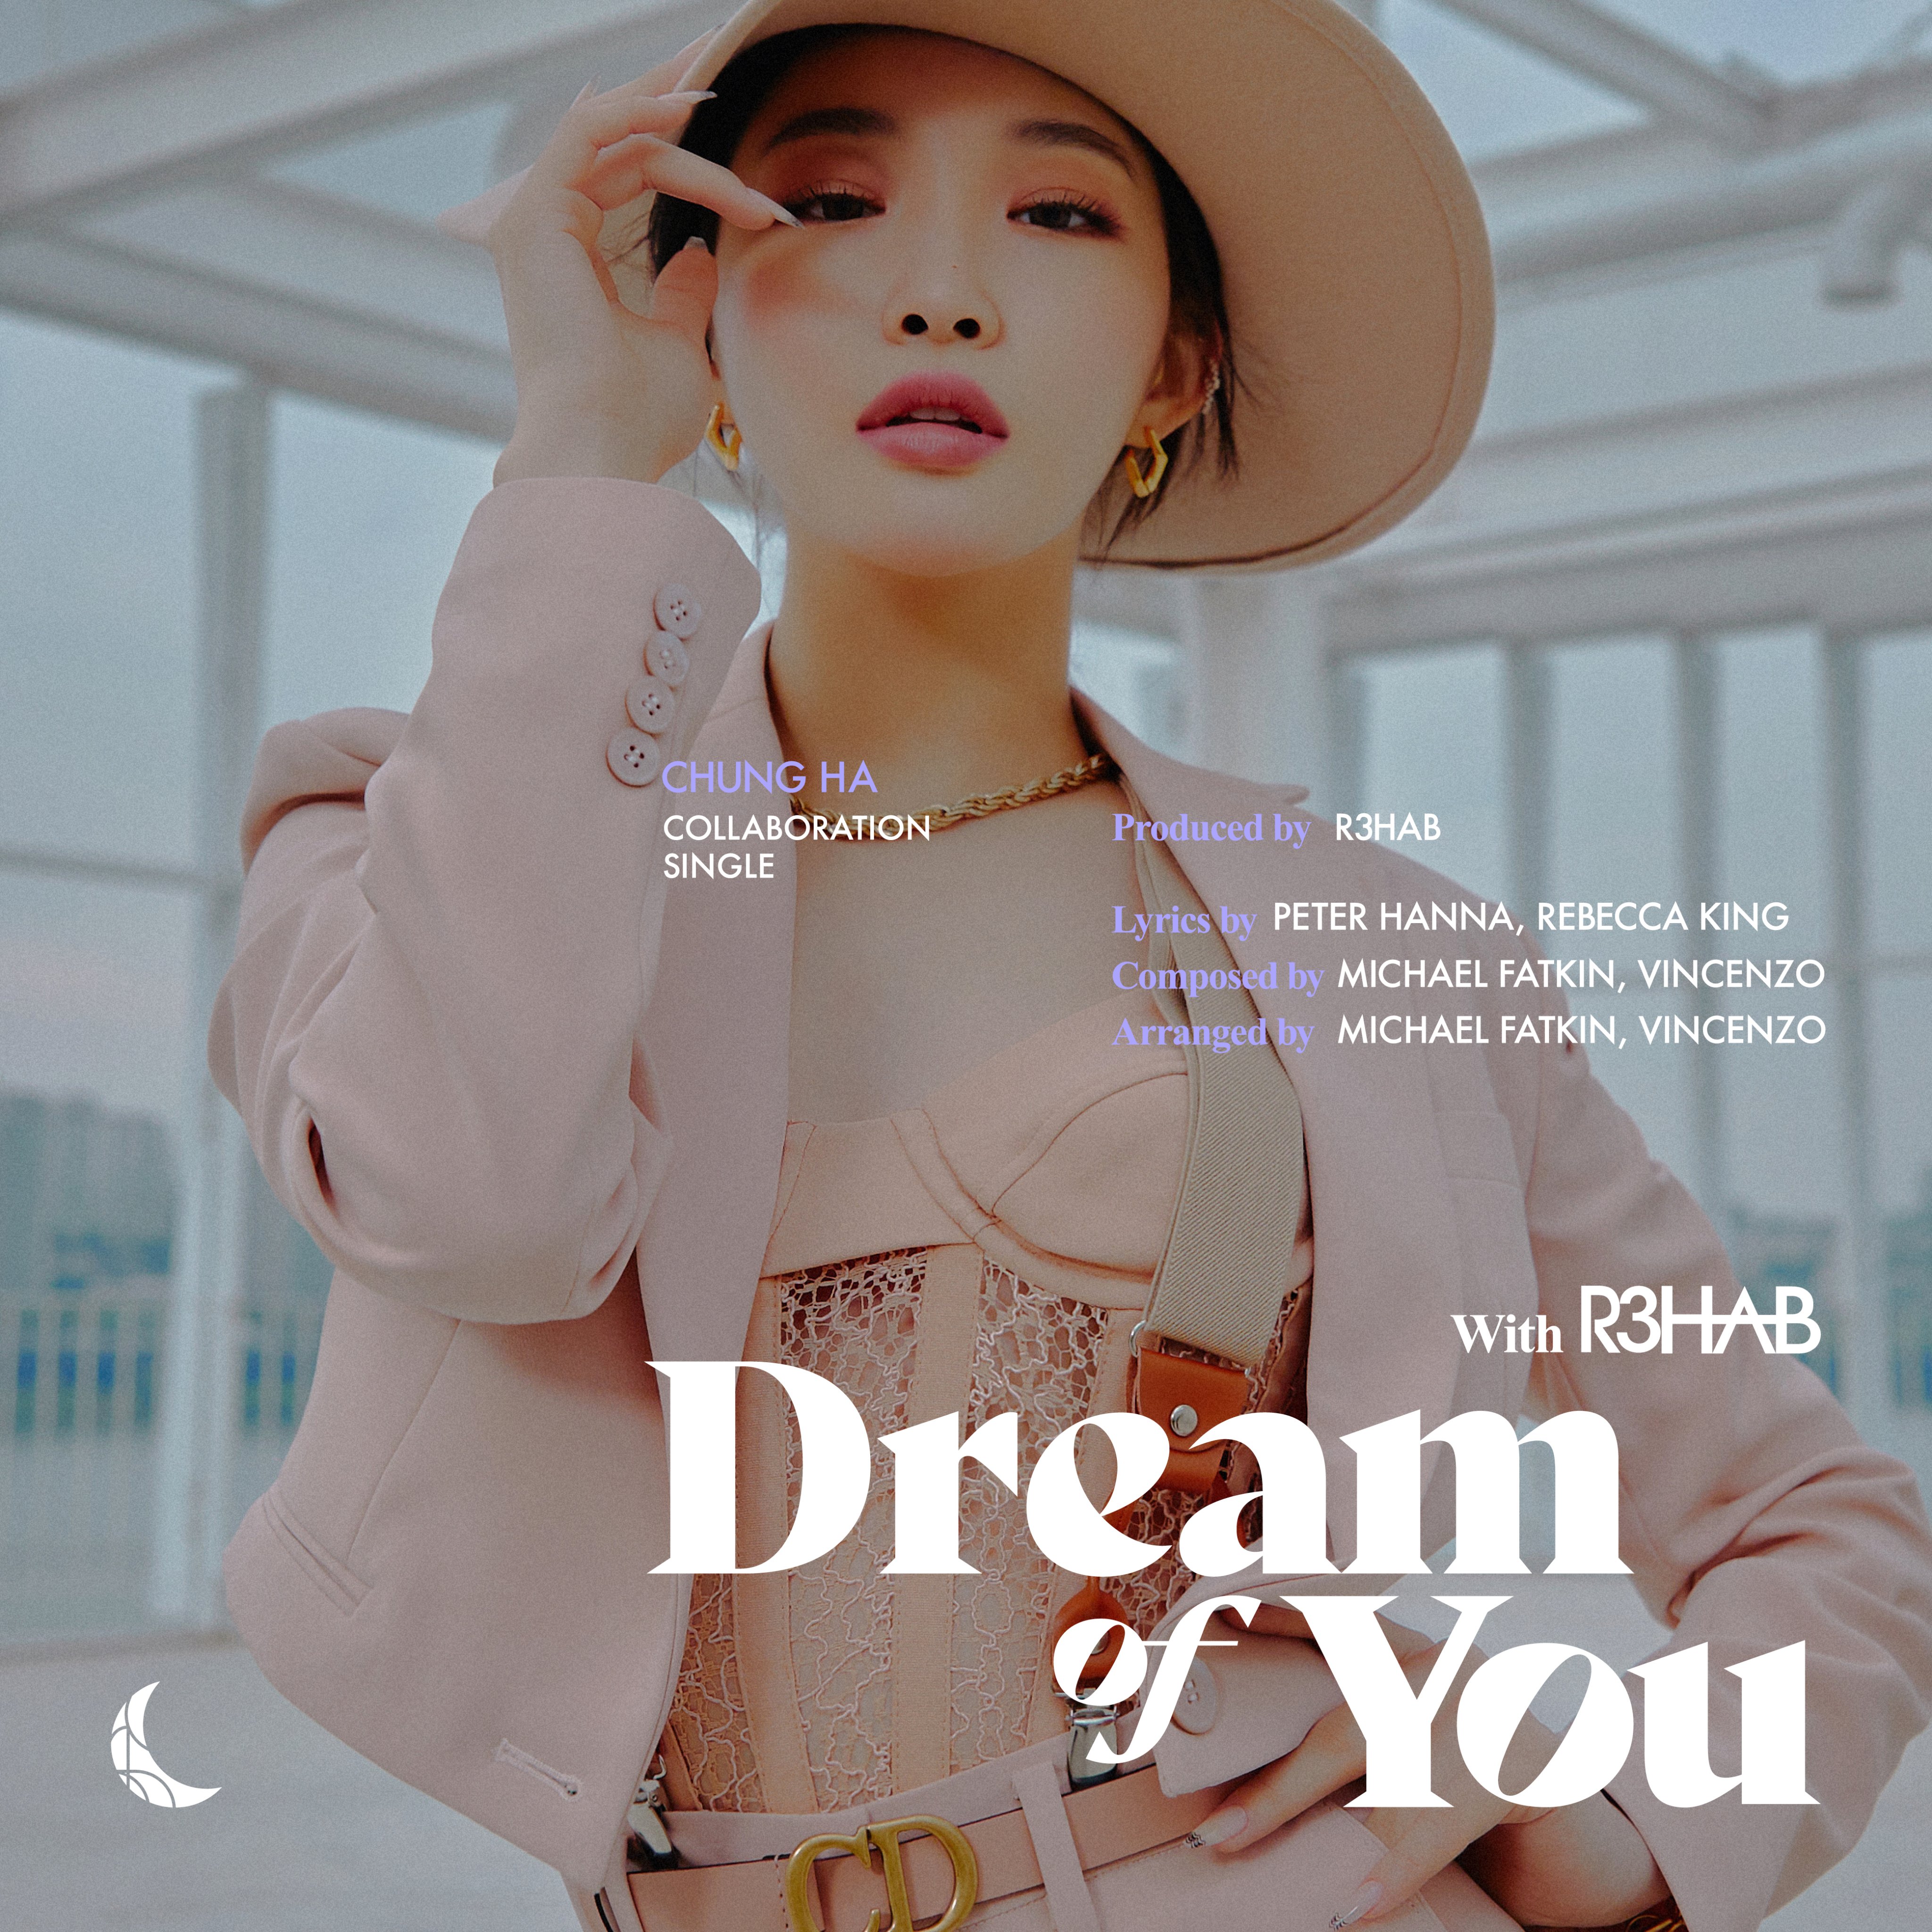 청하 CHUNG HA Collaboration Single 티저 사진 [Dream of You (with R3HAB)]